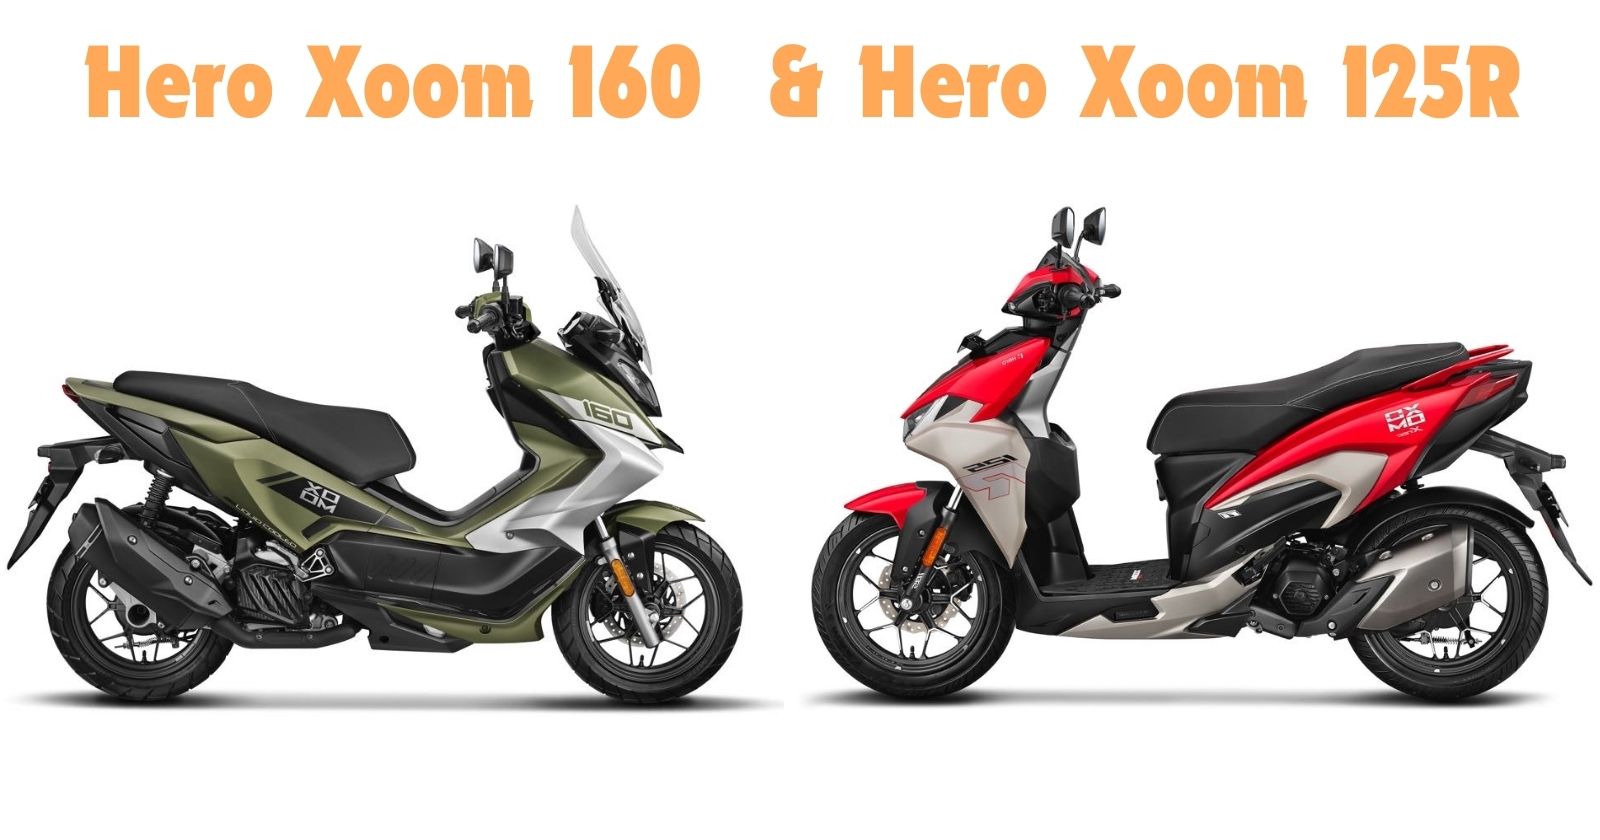 Hero Xoom 160 and Hero Xoom 125R